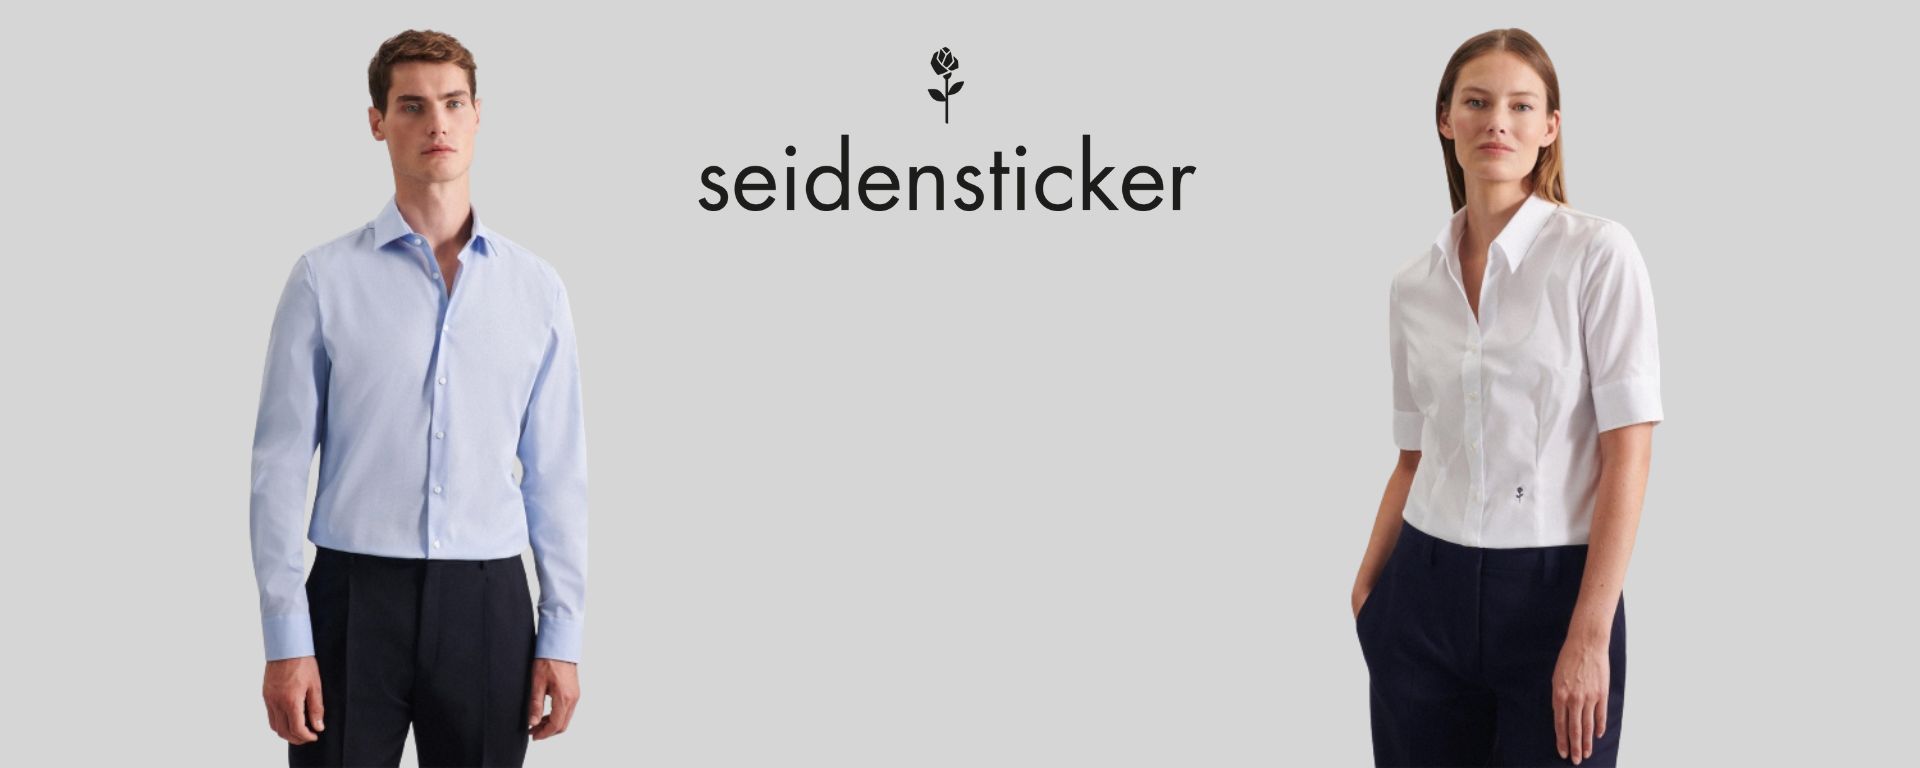 seidensticker brand header image